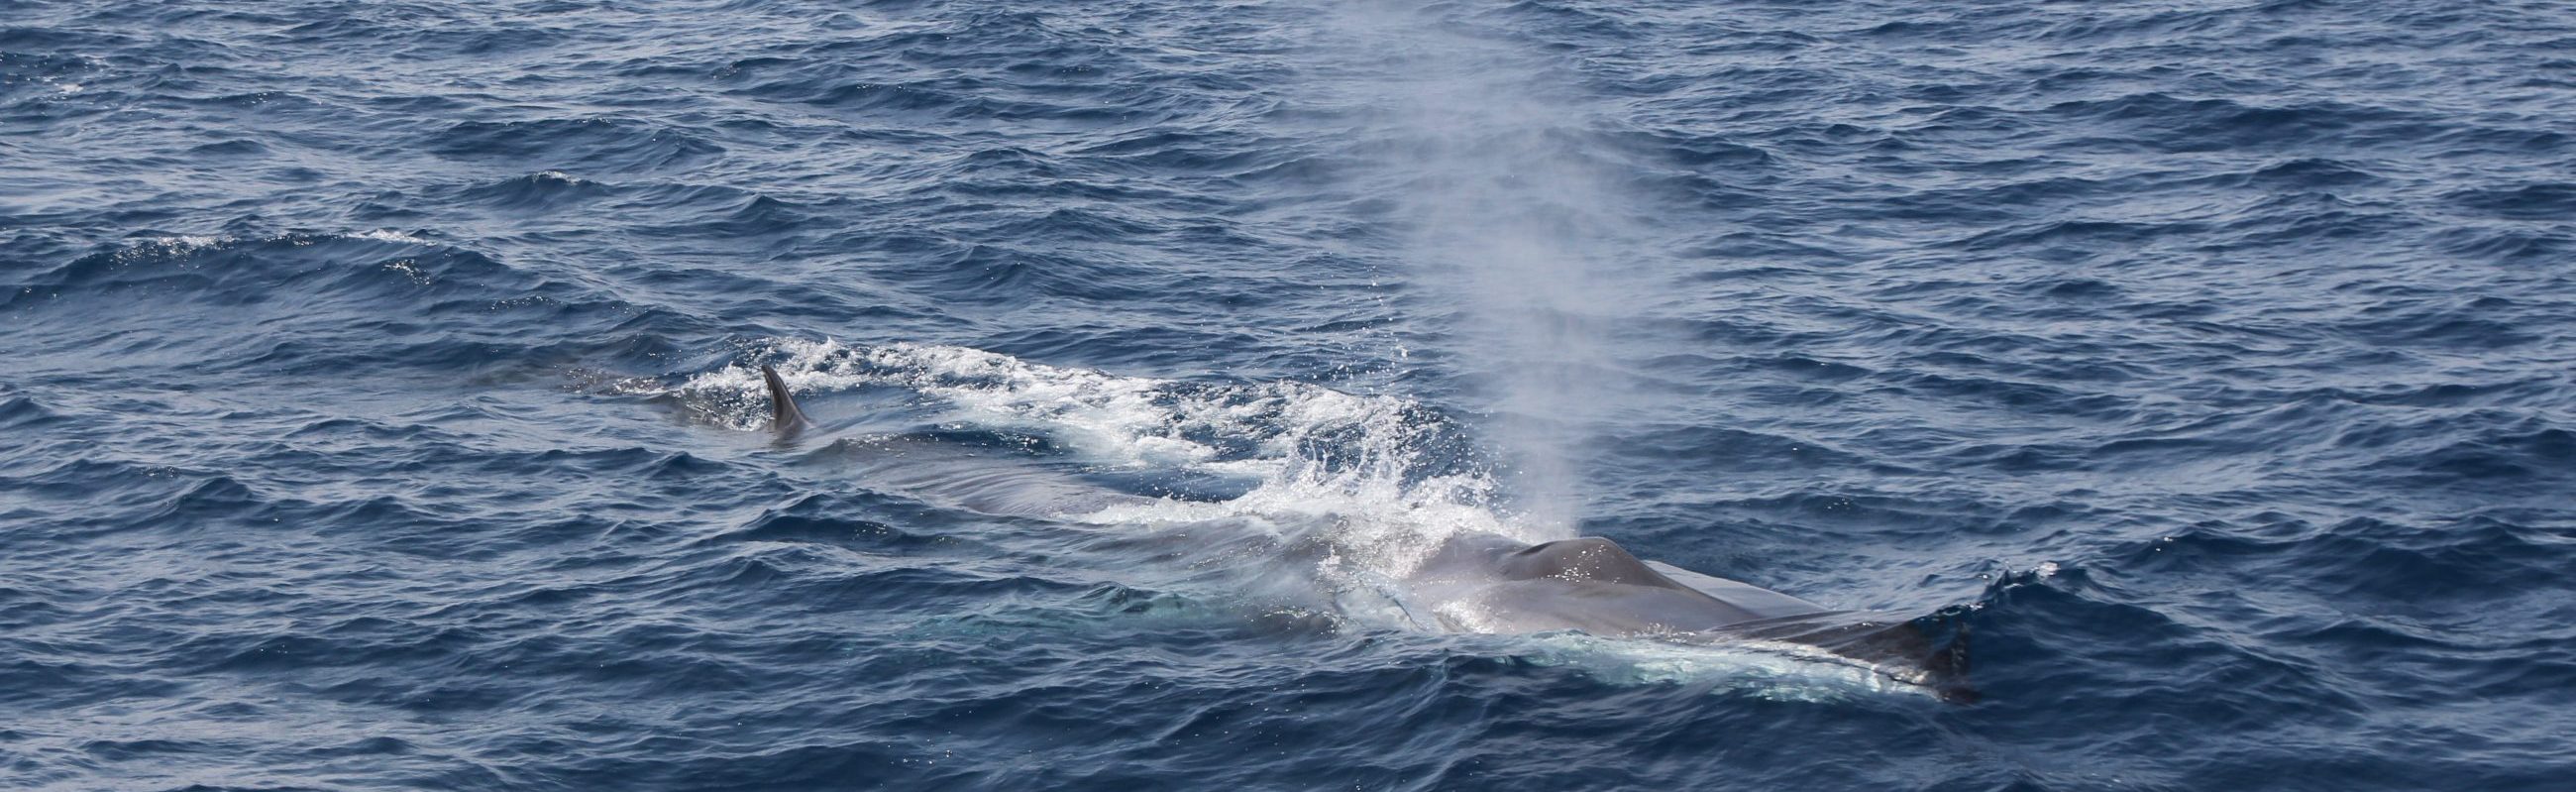 bon cadeau découverte baleines et dauphins au départ de canet en roussillon à bord du catamaran navivoile